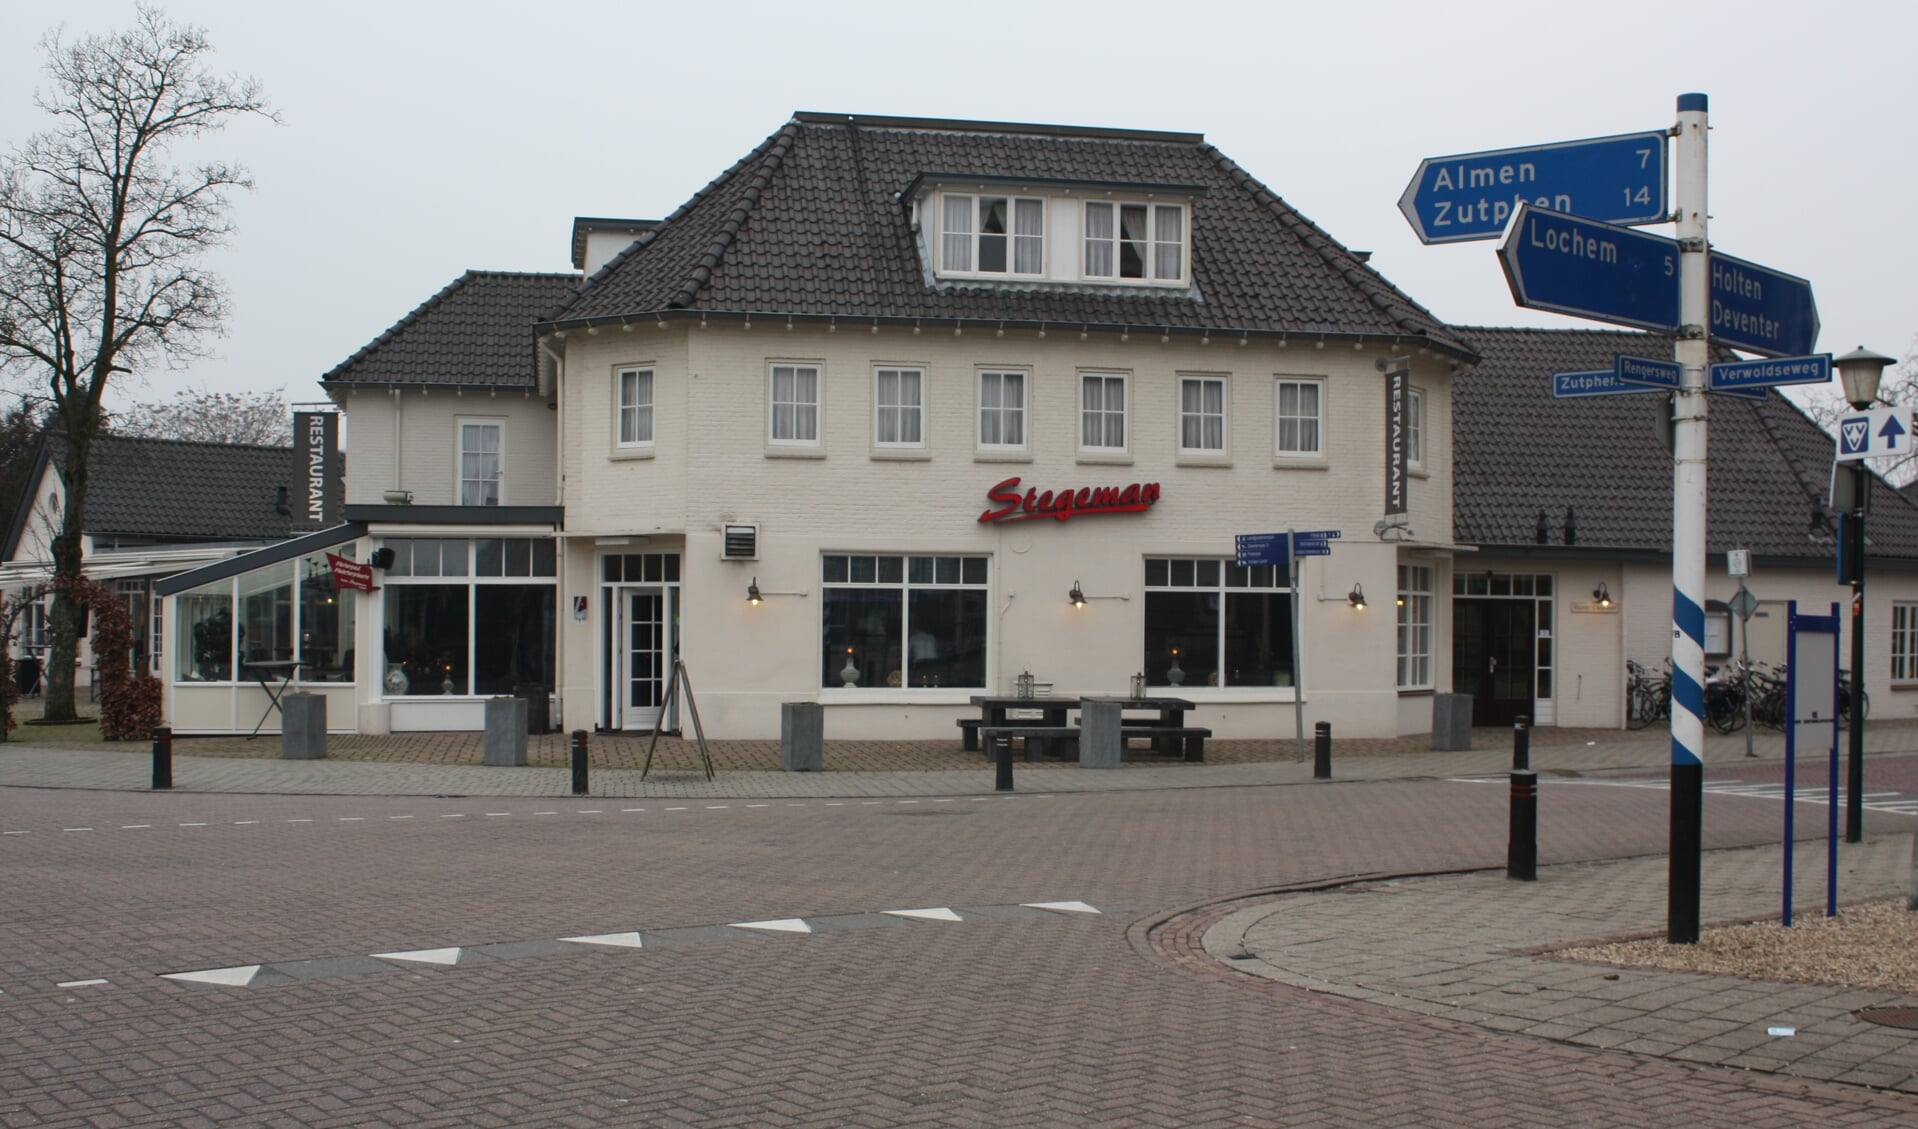 Café-restaurant Stegeman sluit voor onbepaalde tijd de deuren. Foto: Arjen Dieperink